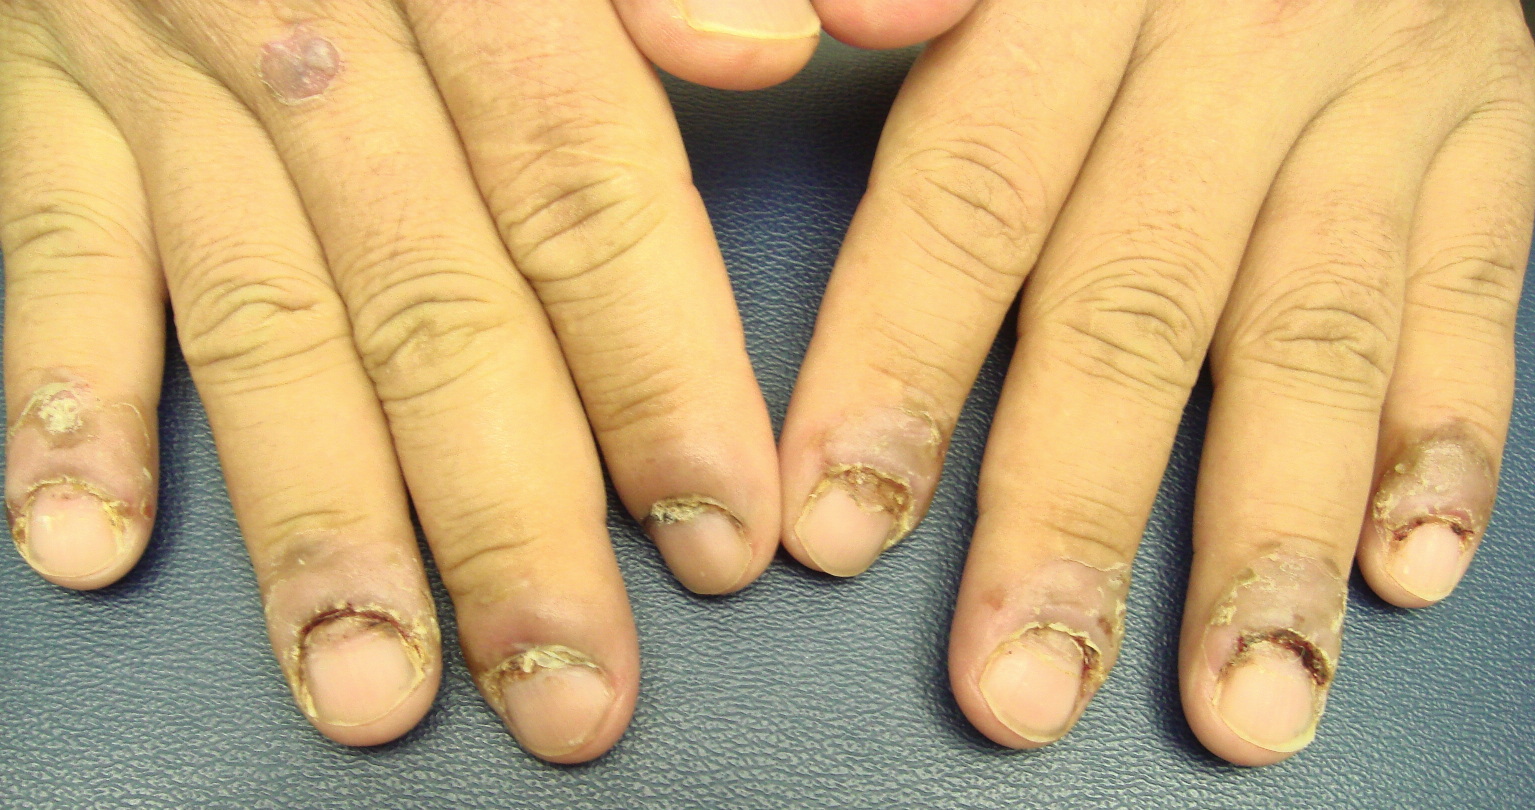 nail diseases #whitenails #koilonychia #nailpsoriasis - YouTube